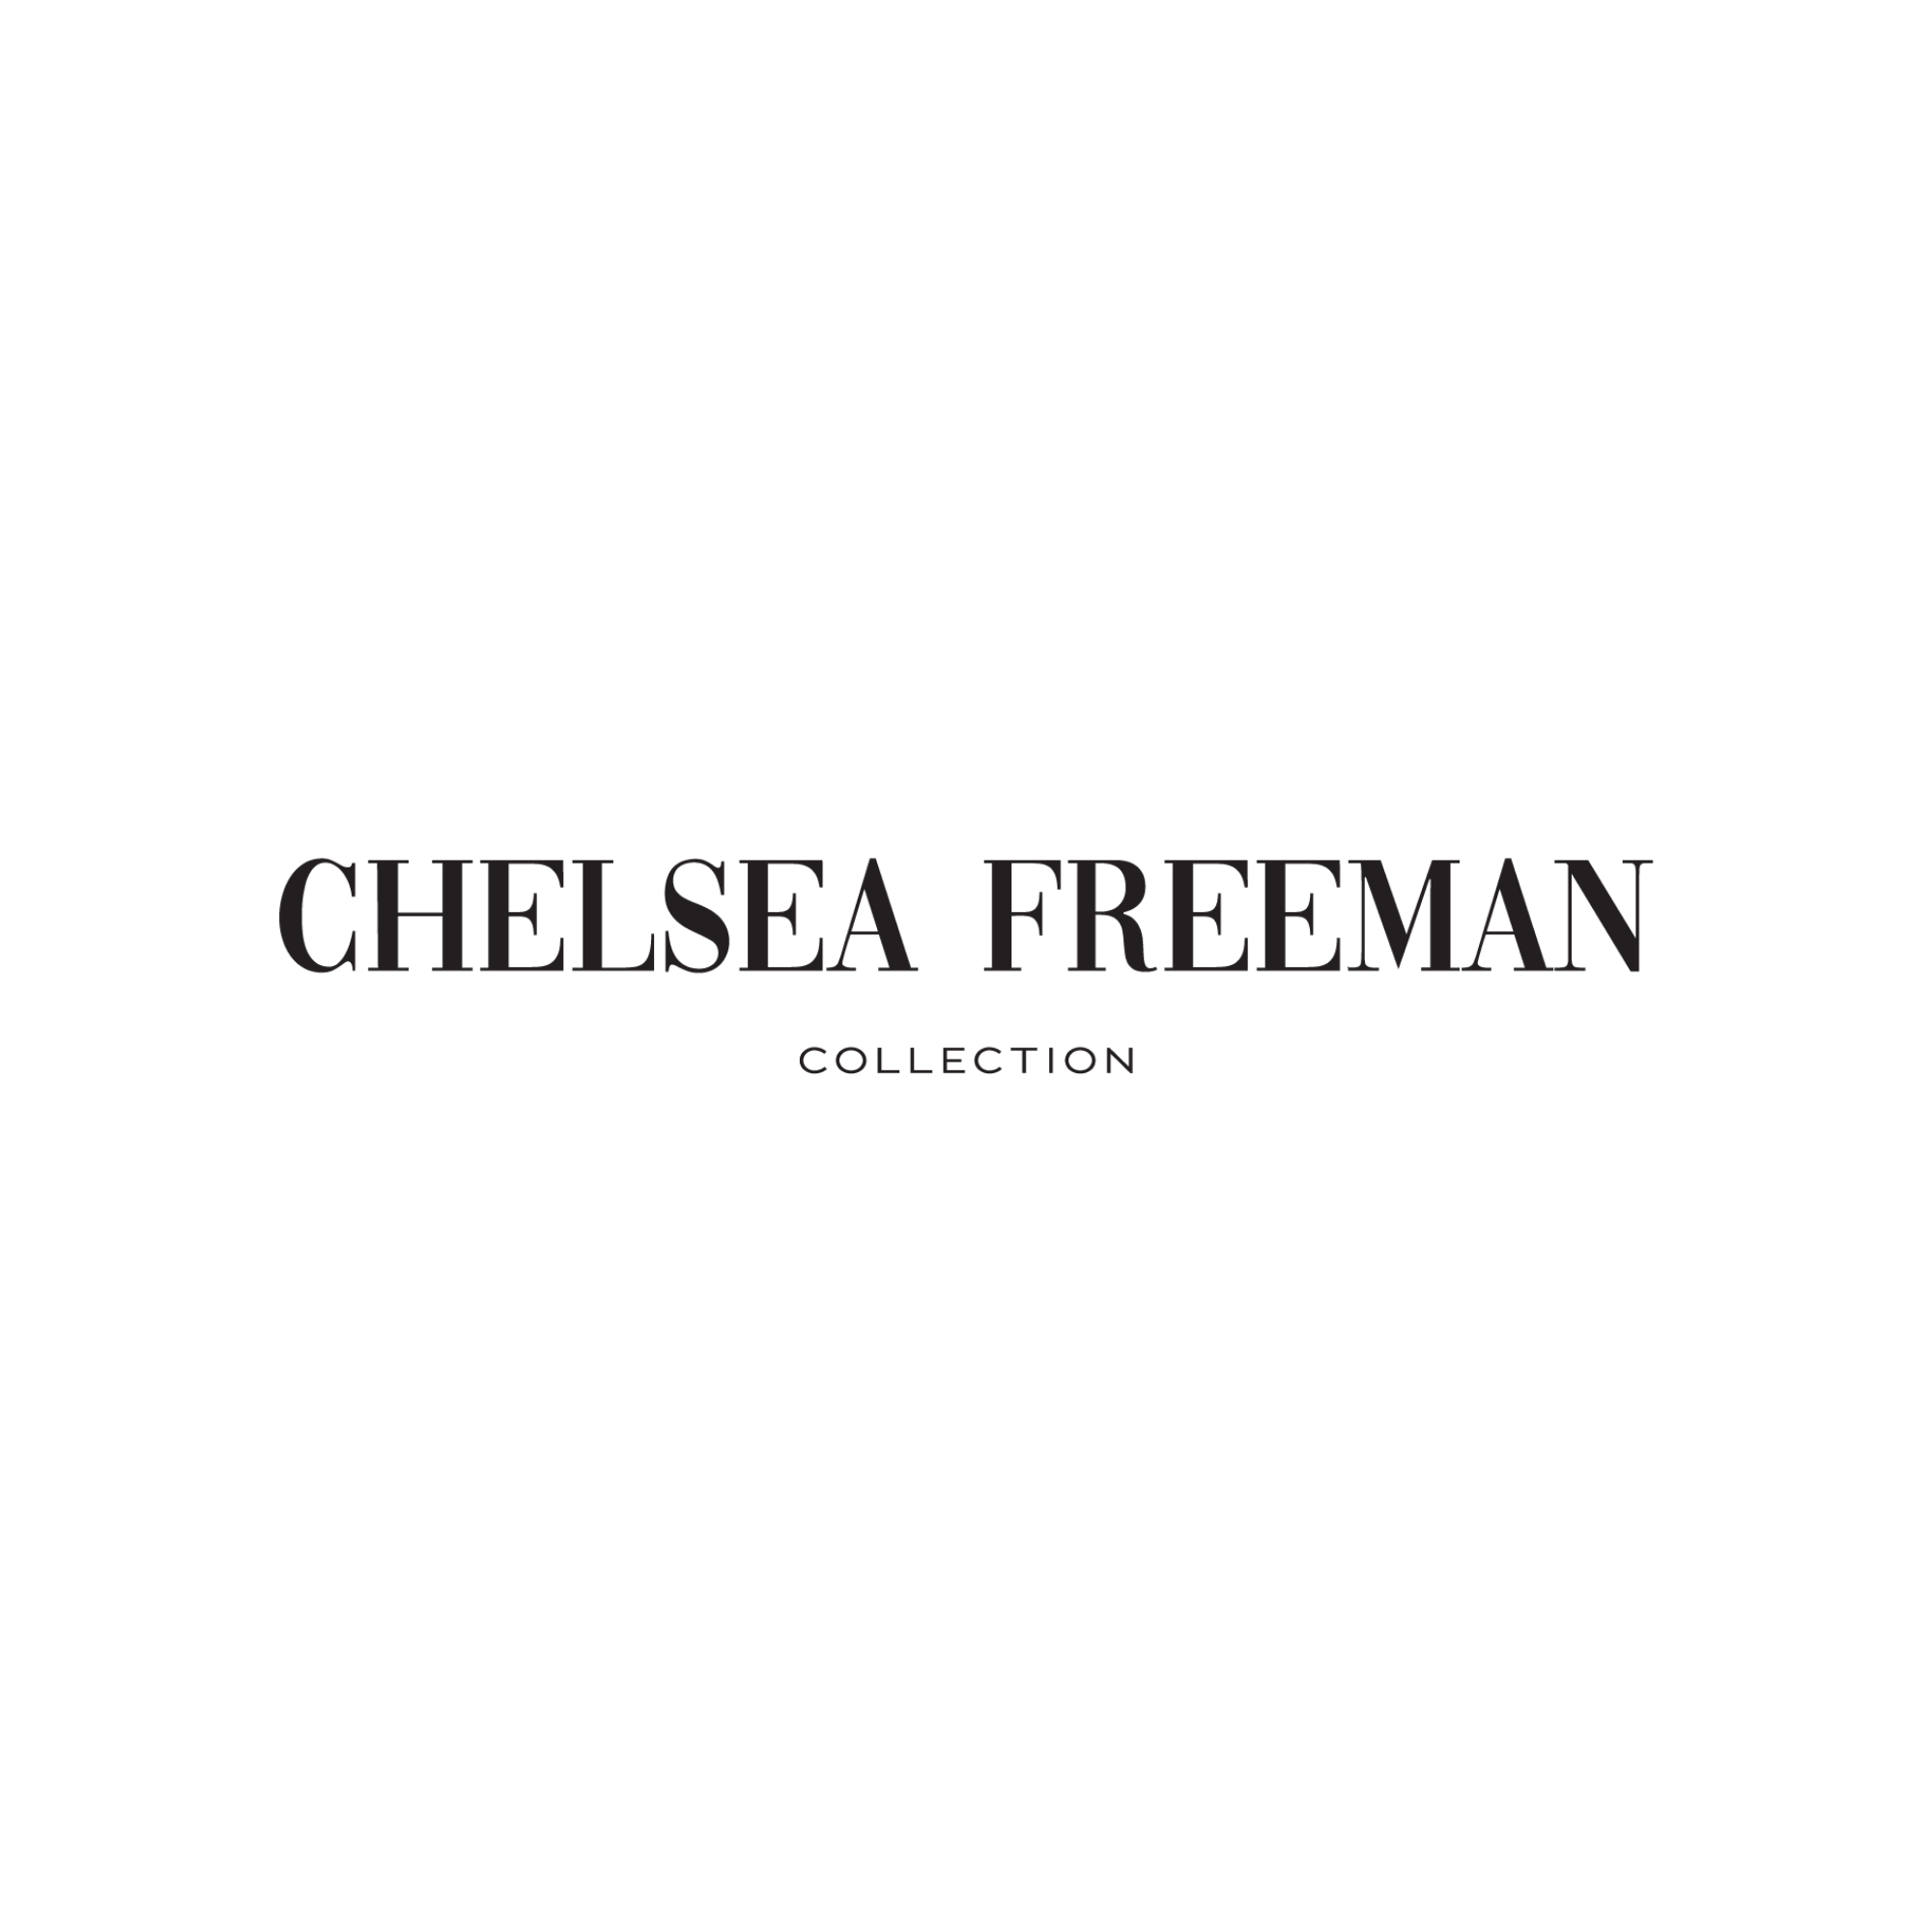 Chelsea Freeman on Instagram: Being their Mom is my favorite